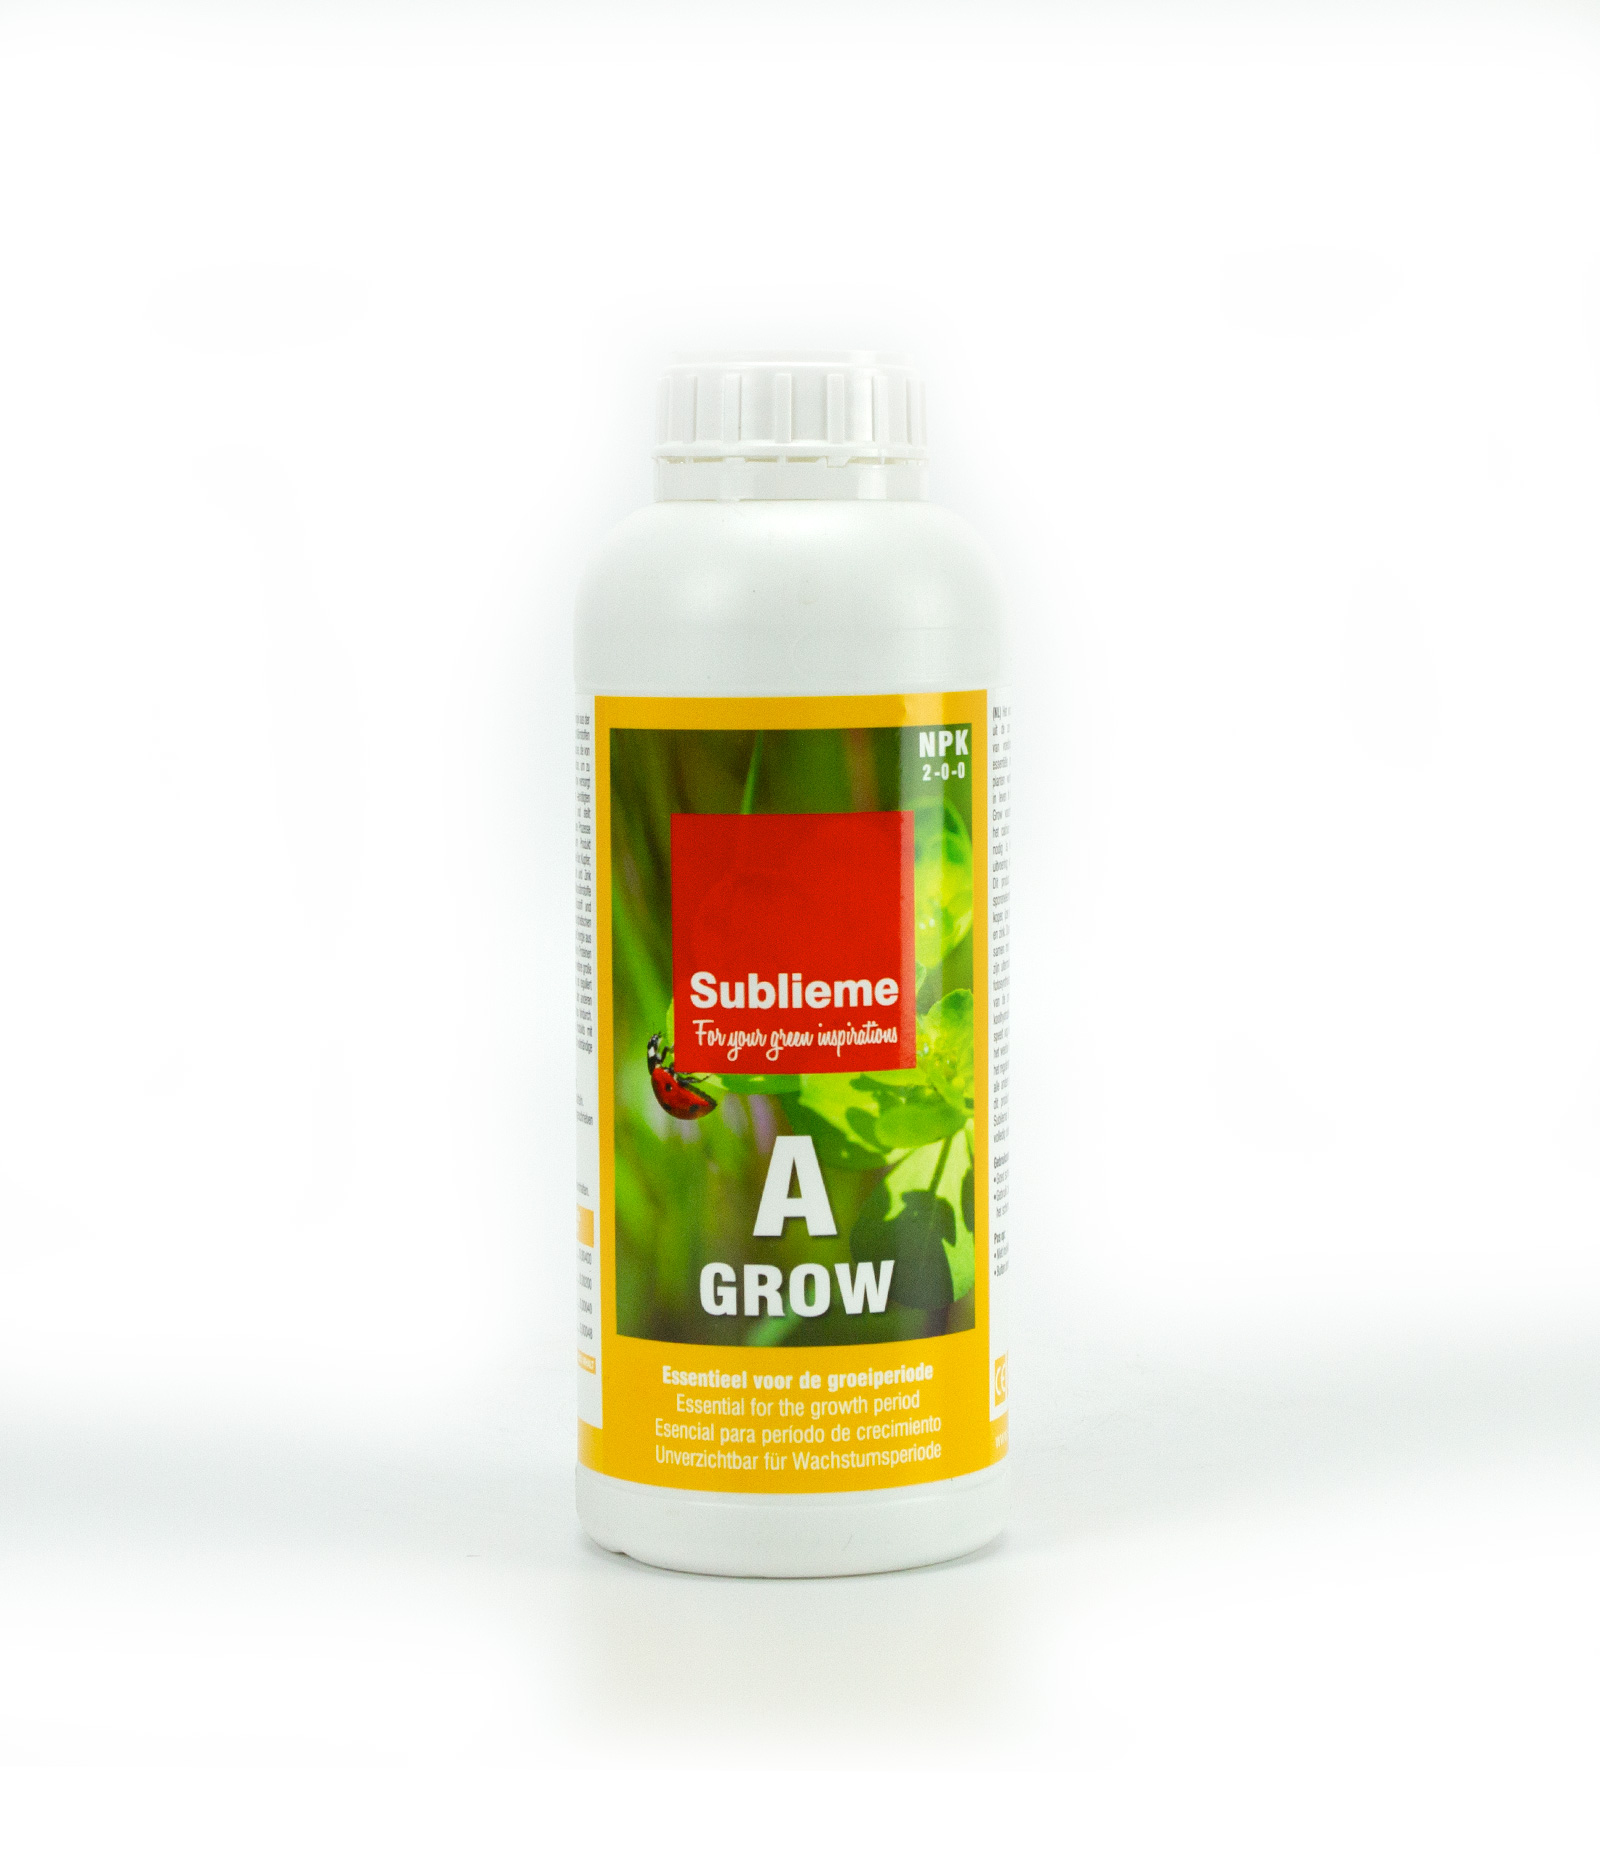 Sublieme A Grow - 1 liter